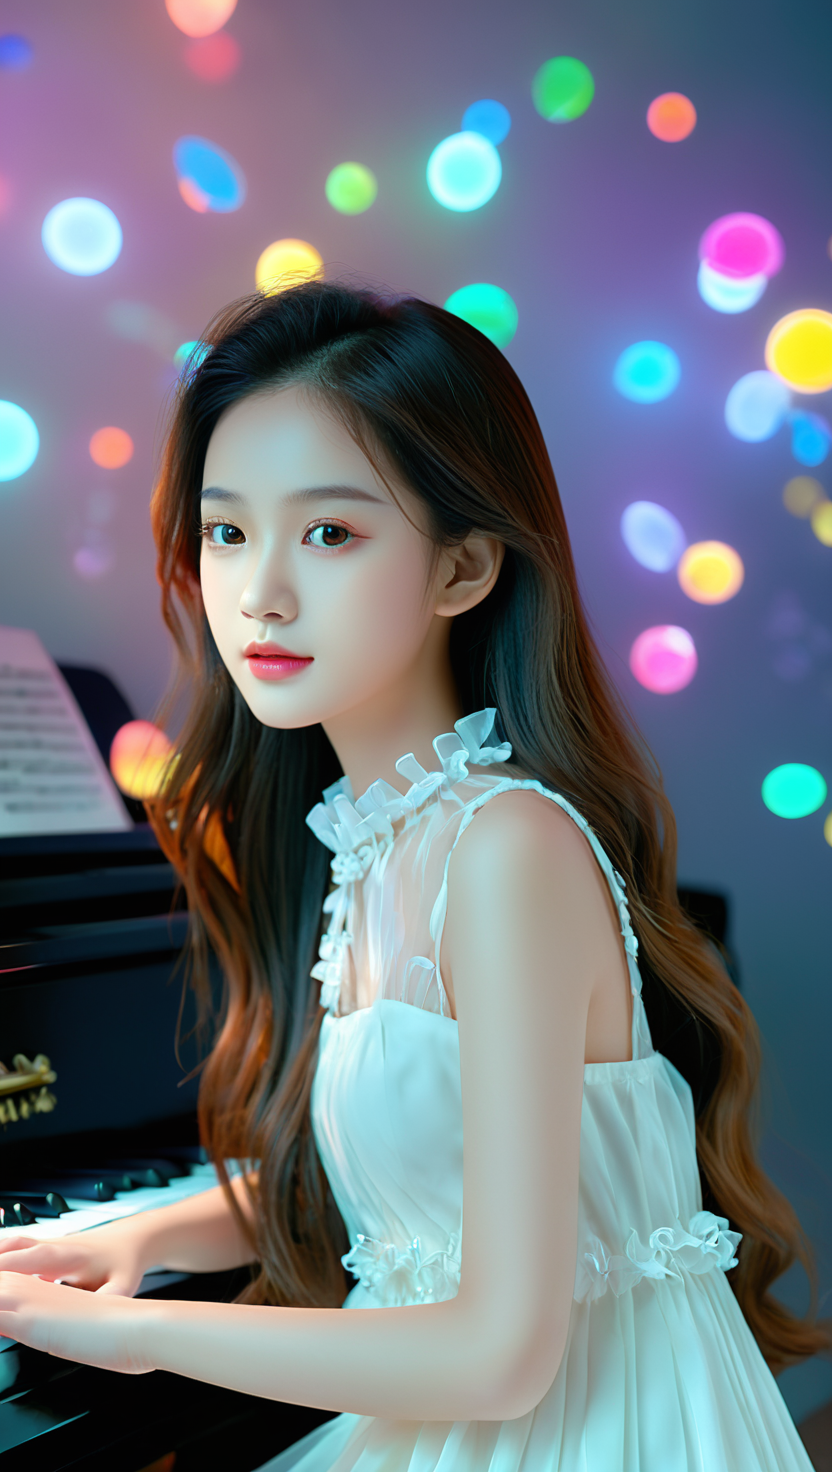 弹钢琴的女孩·夏日白裙美女